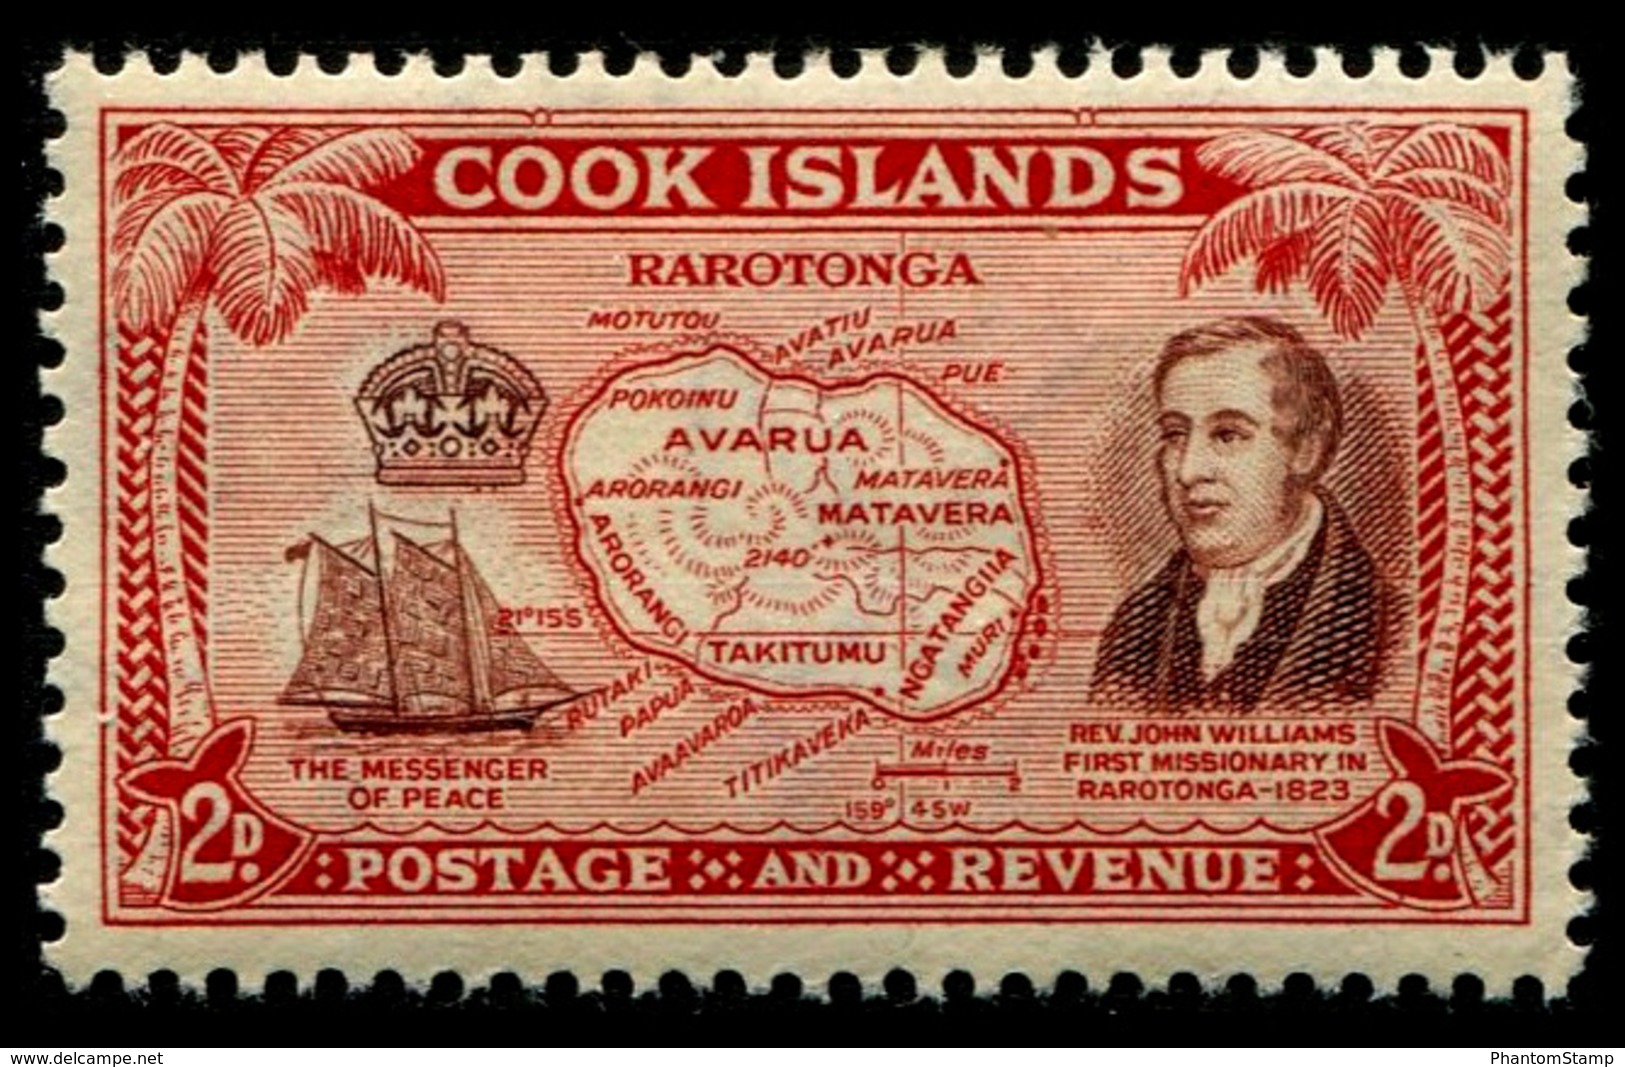 1949 Cook Islands - Cook Islands